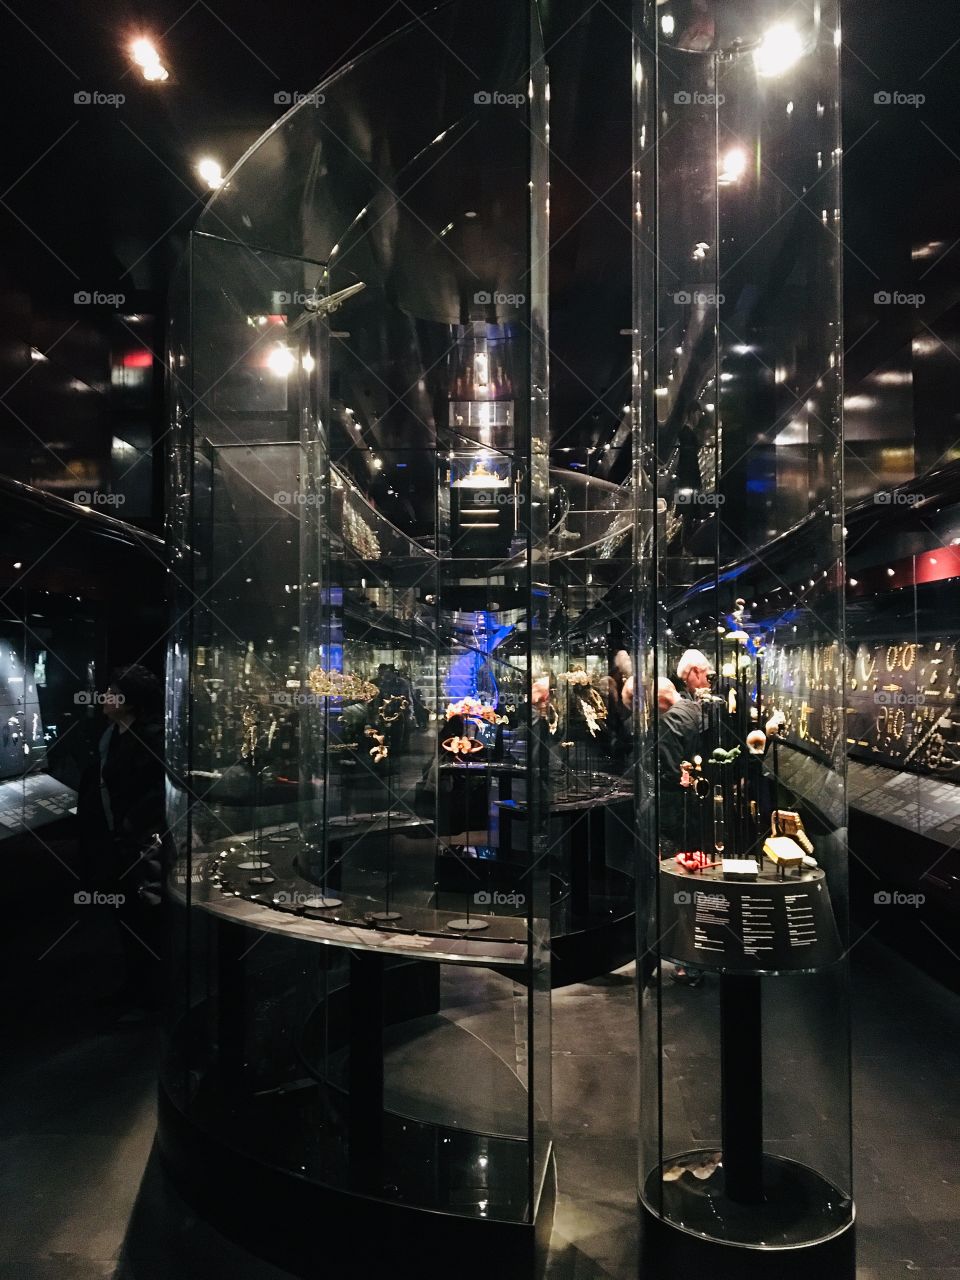 Victoria and Albert museum jewelry exhibit October 2018